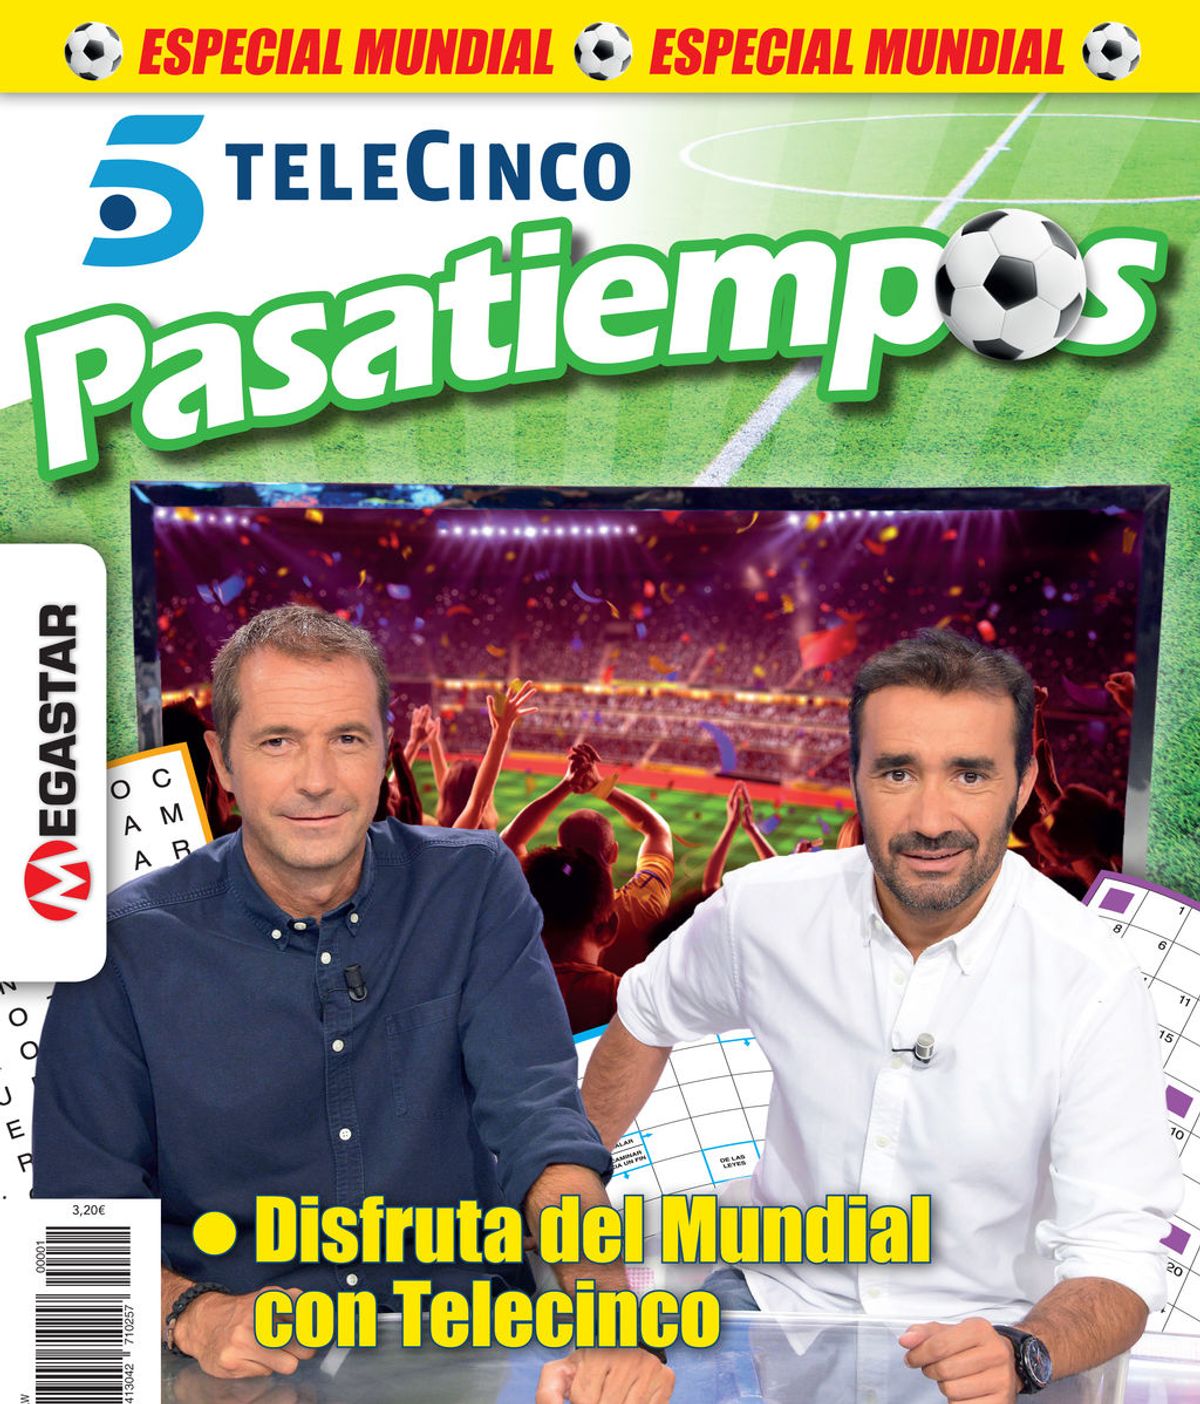 Pasatiempos Telecinco Edición Mundial ¡Ya en tu quiosco!